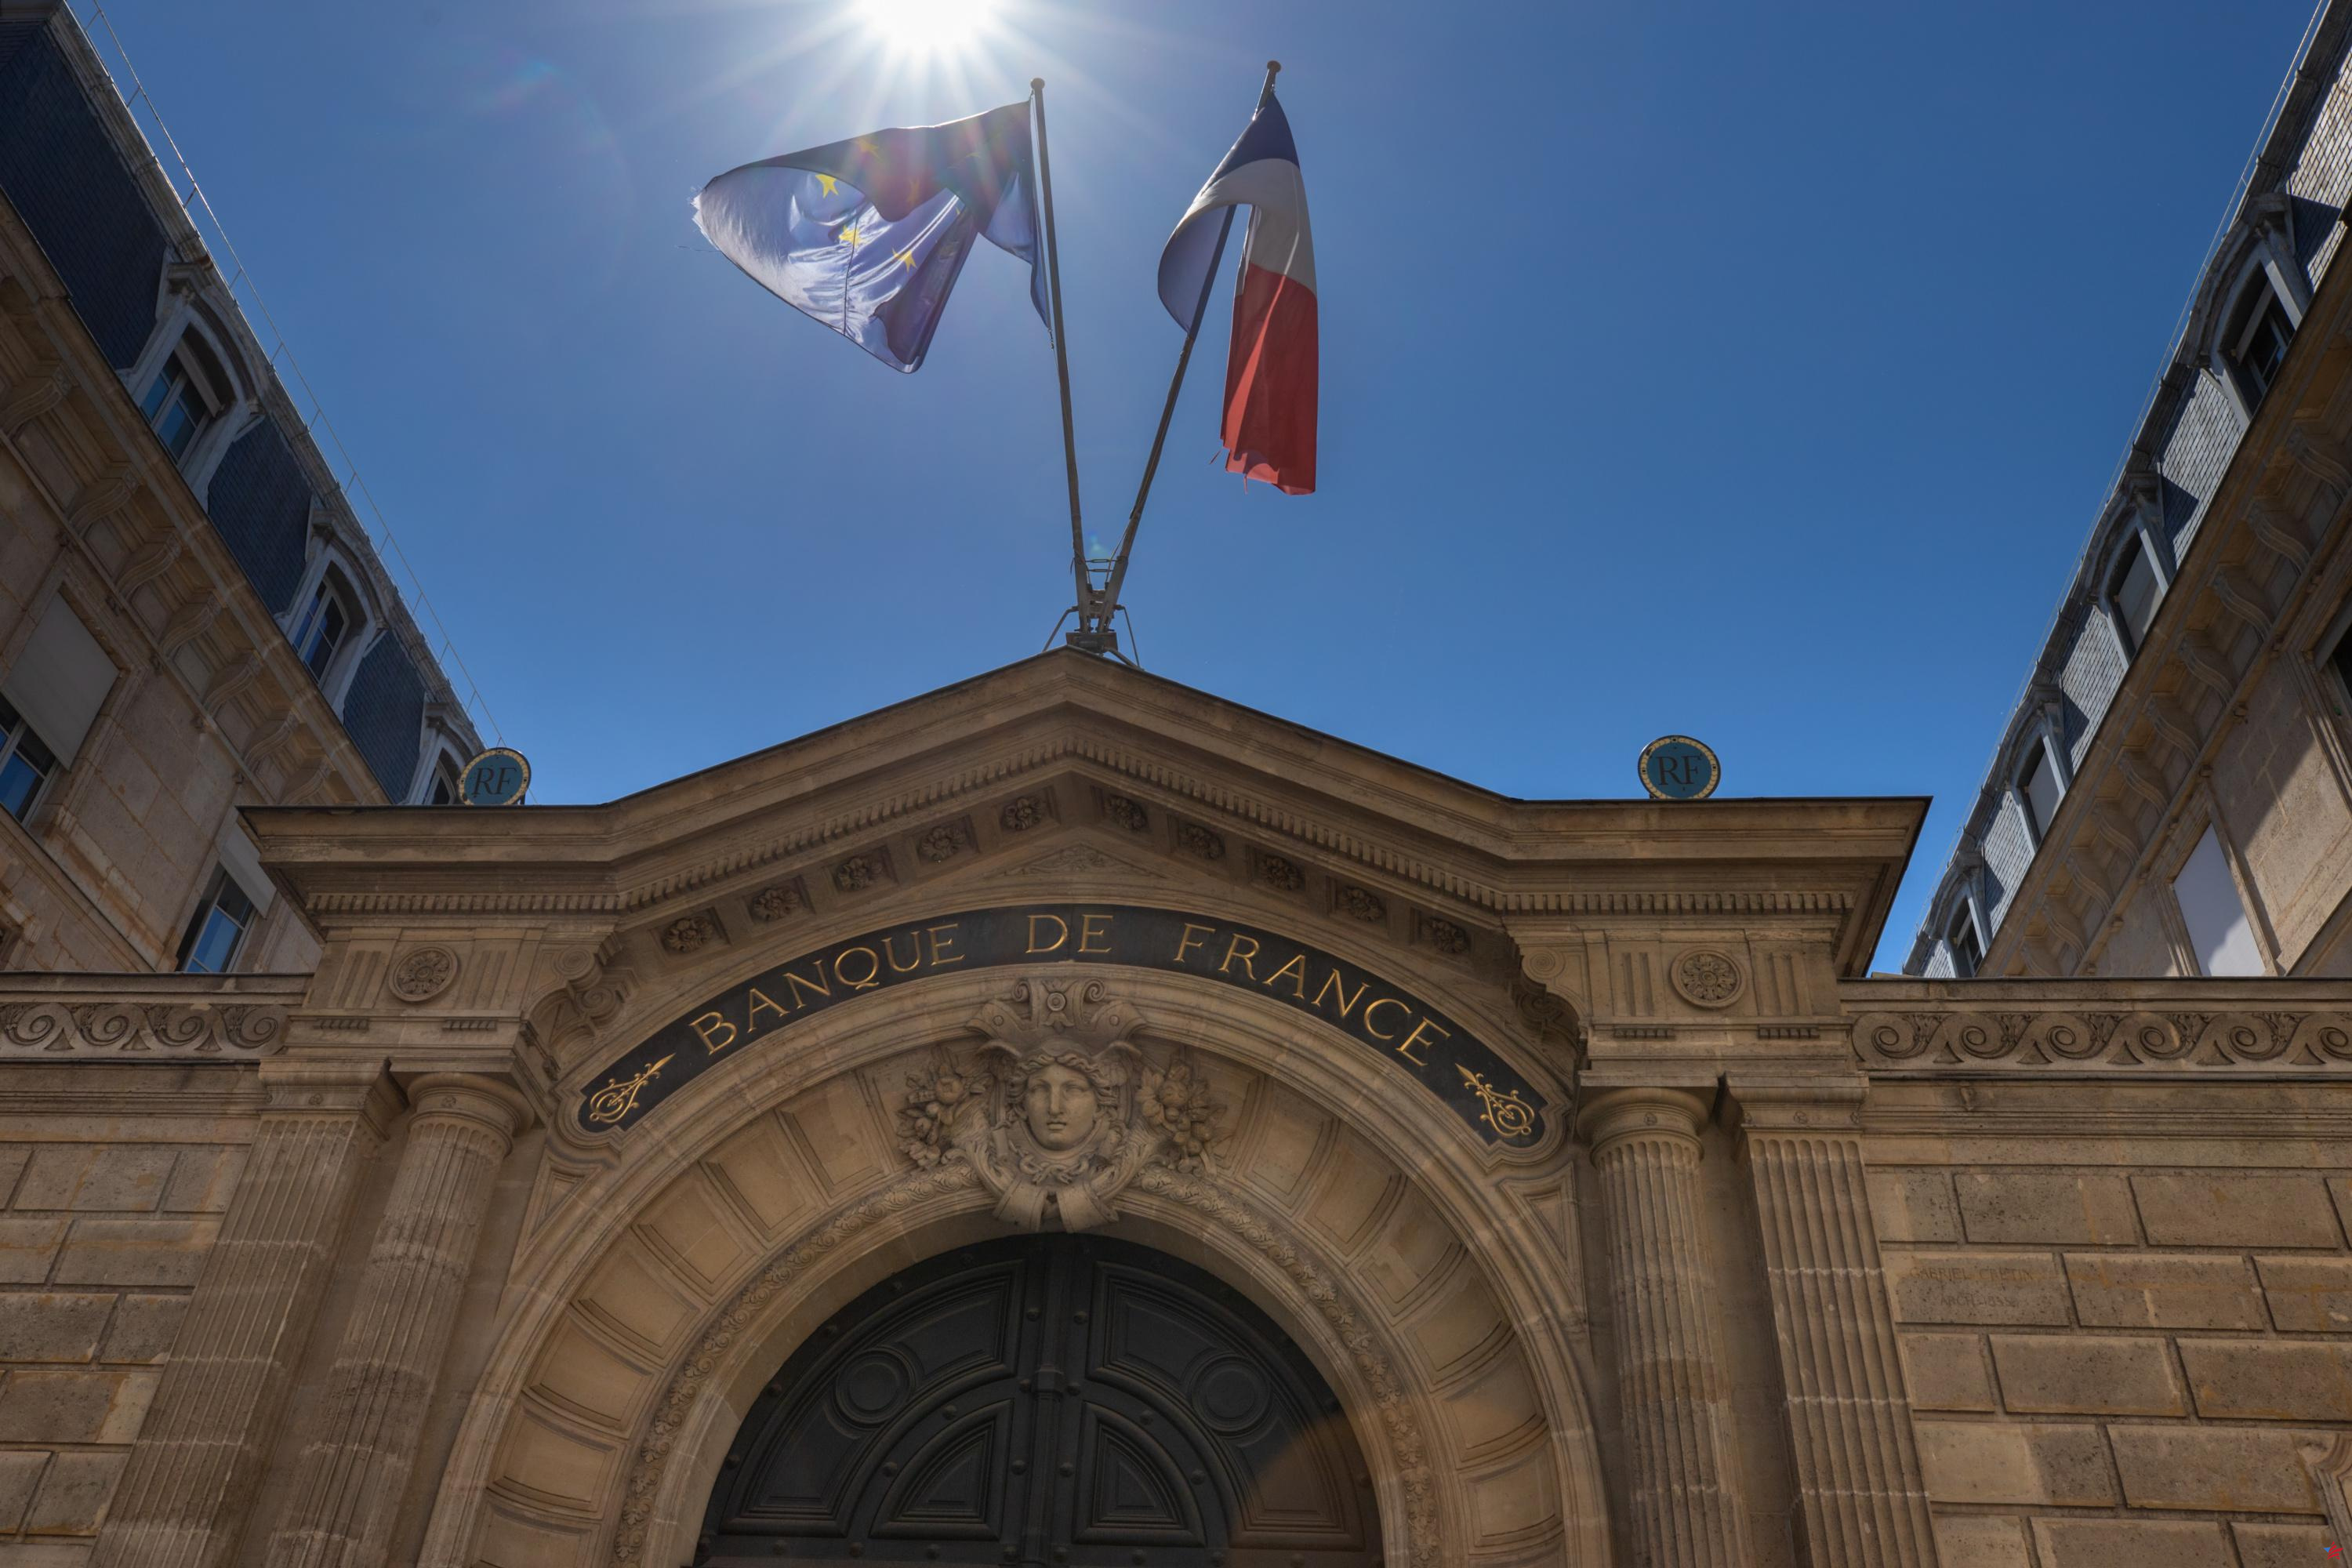 La Banque de France prevé una ligera recuperación de la economía francesa